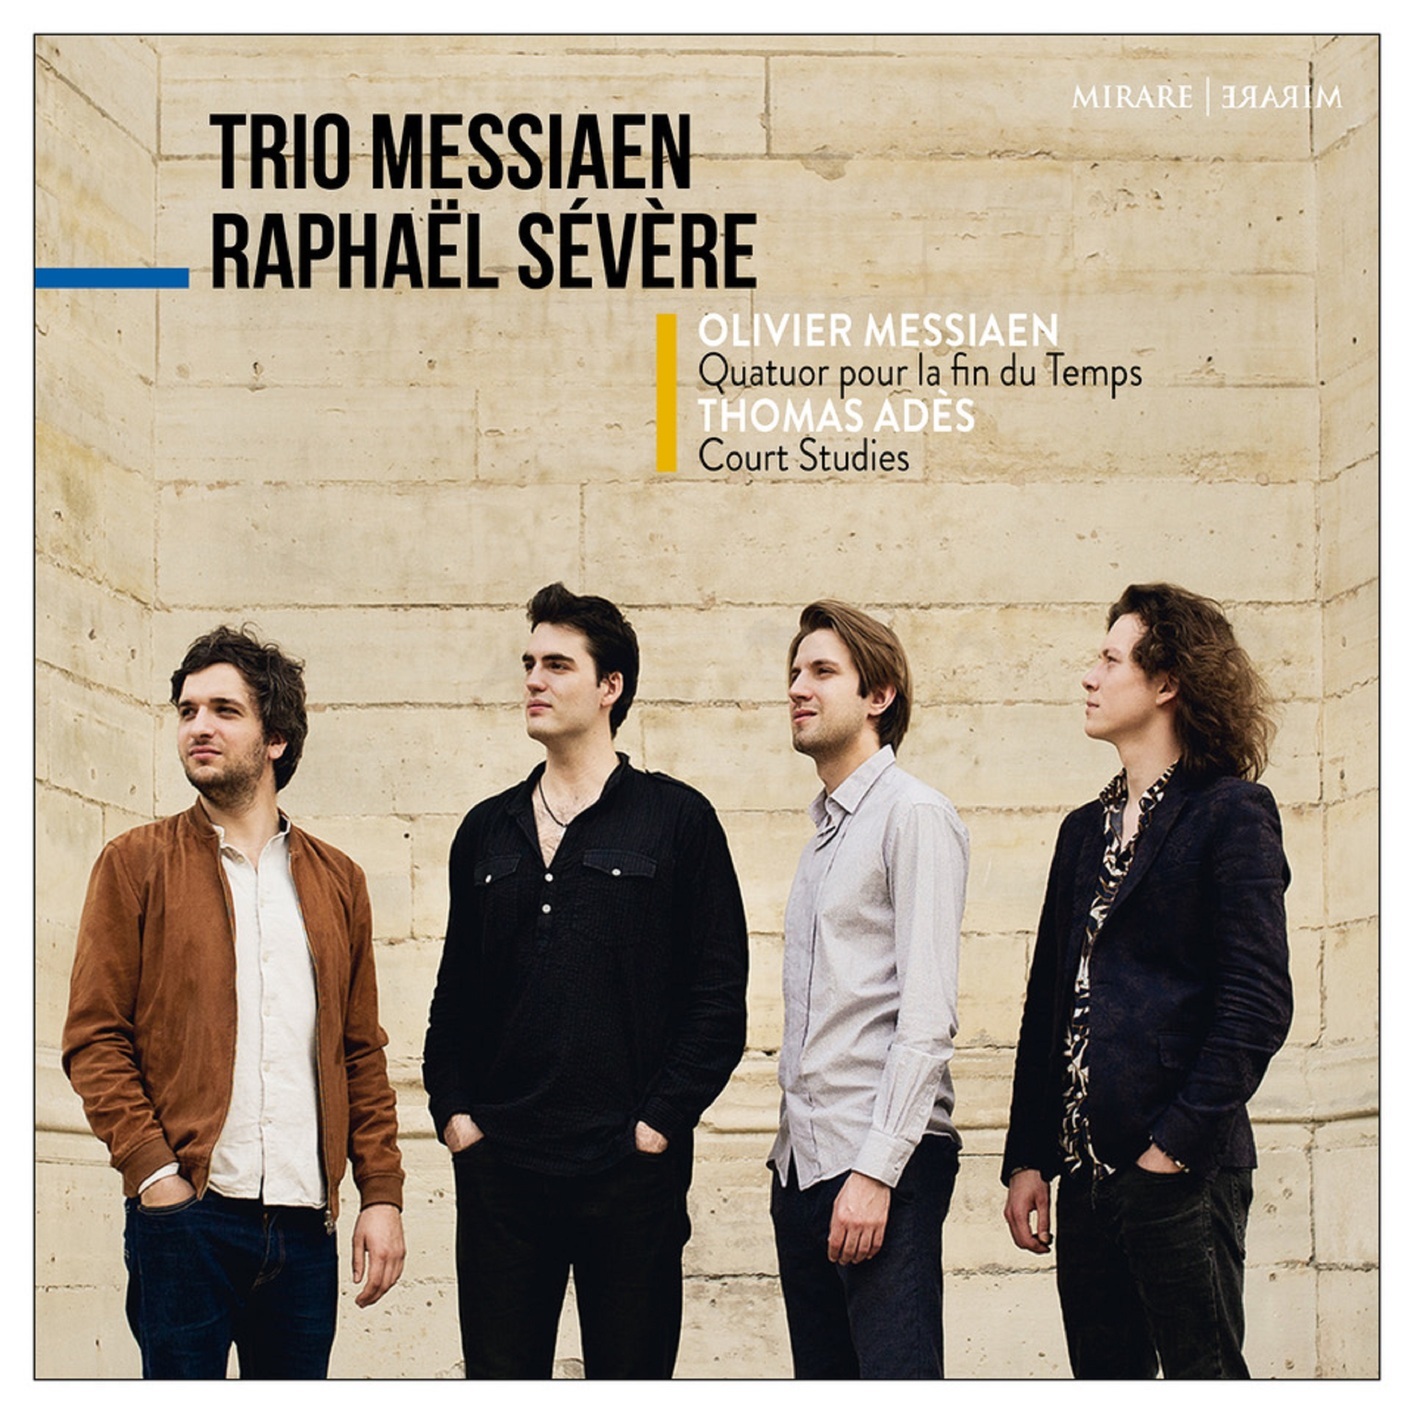 Raphael Severe & Trio Messiaen – Messiaen: Quatuor pour la fin du Temps (2018) [FLAC 24bit/96kHz]